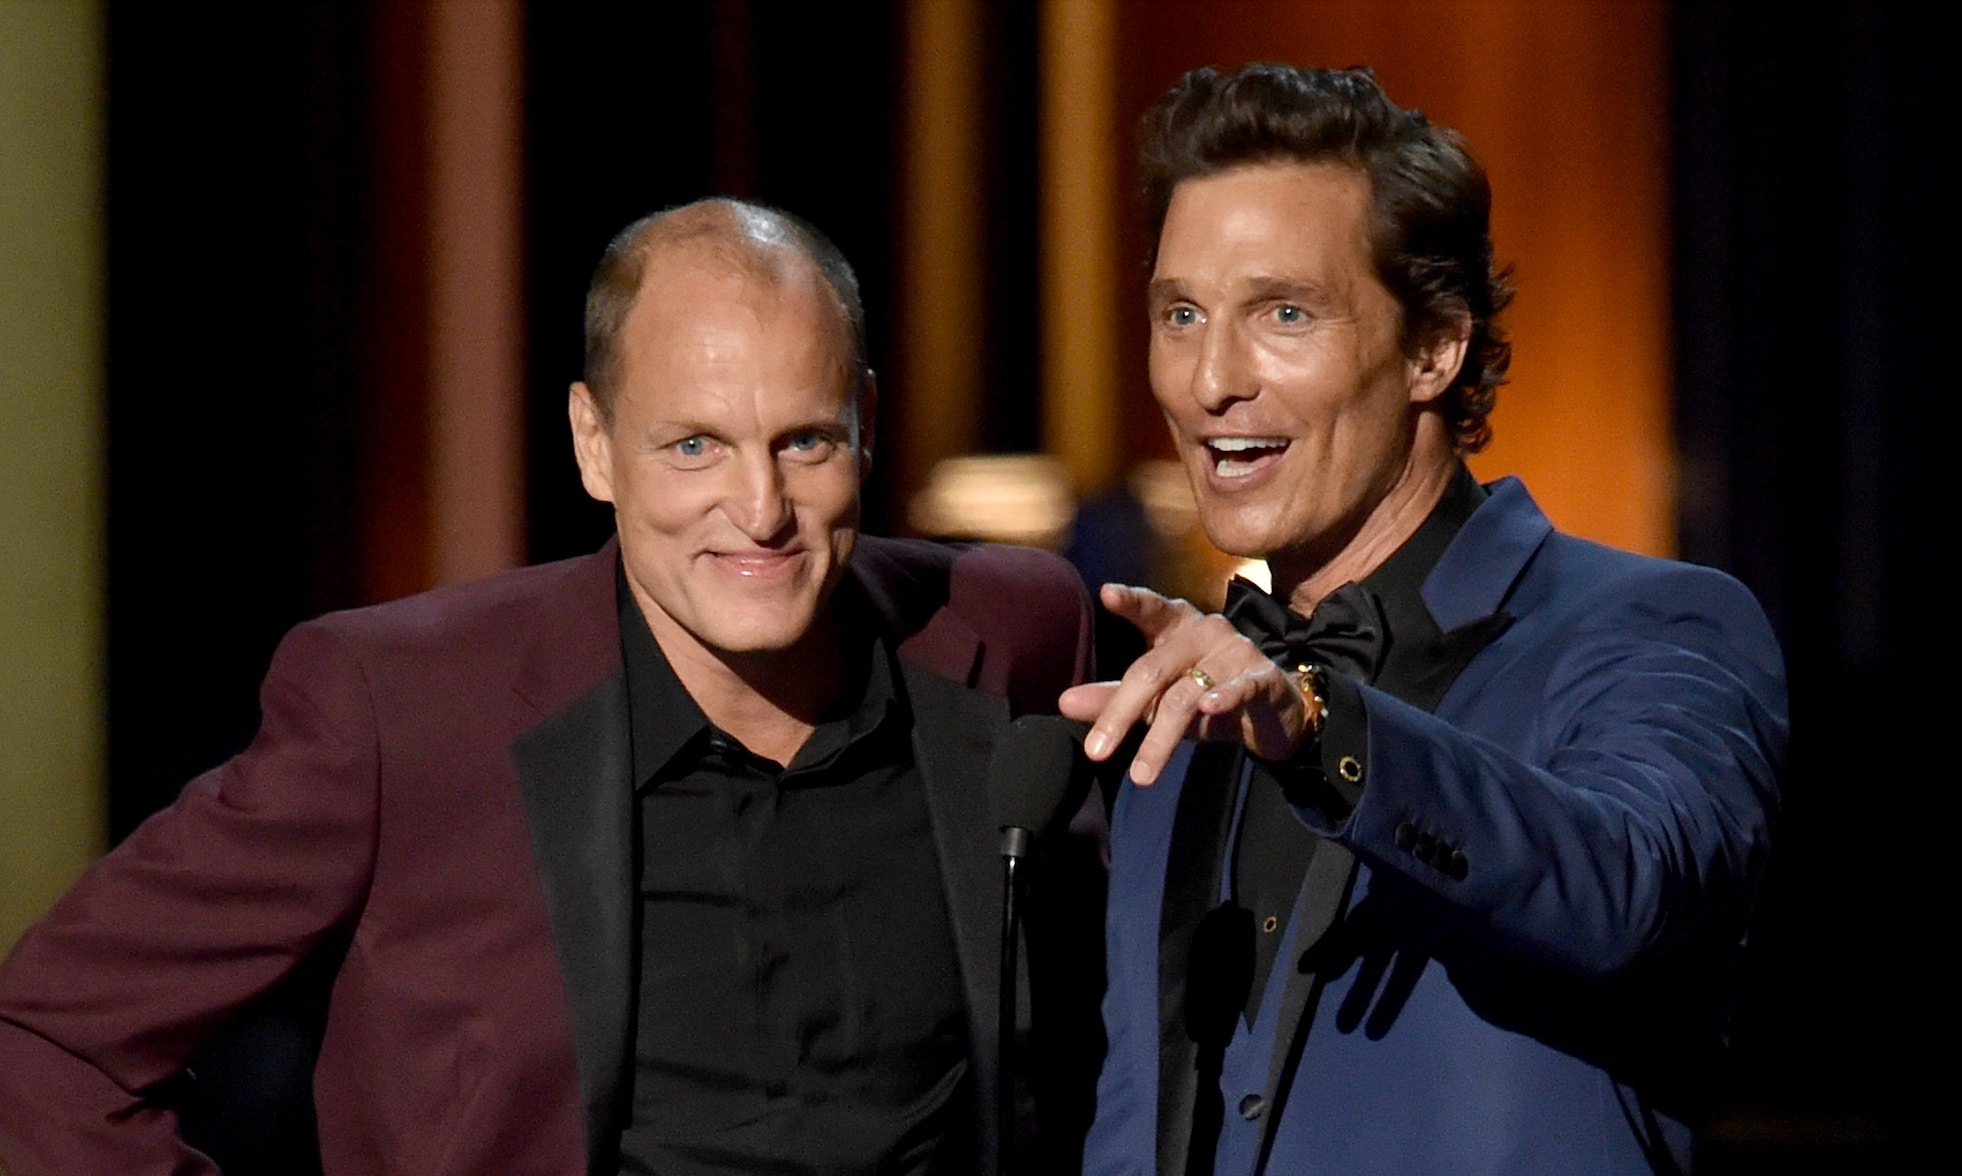 psicologiasdobrasil.com.br - Matthew McConaughey revela que Woody Harrelson pode ser seu irmão biológico